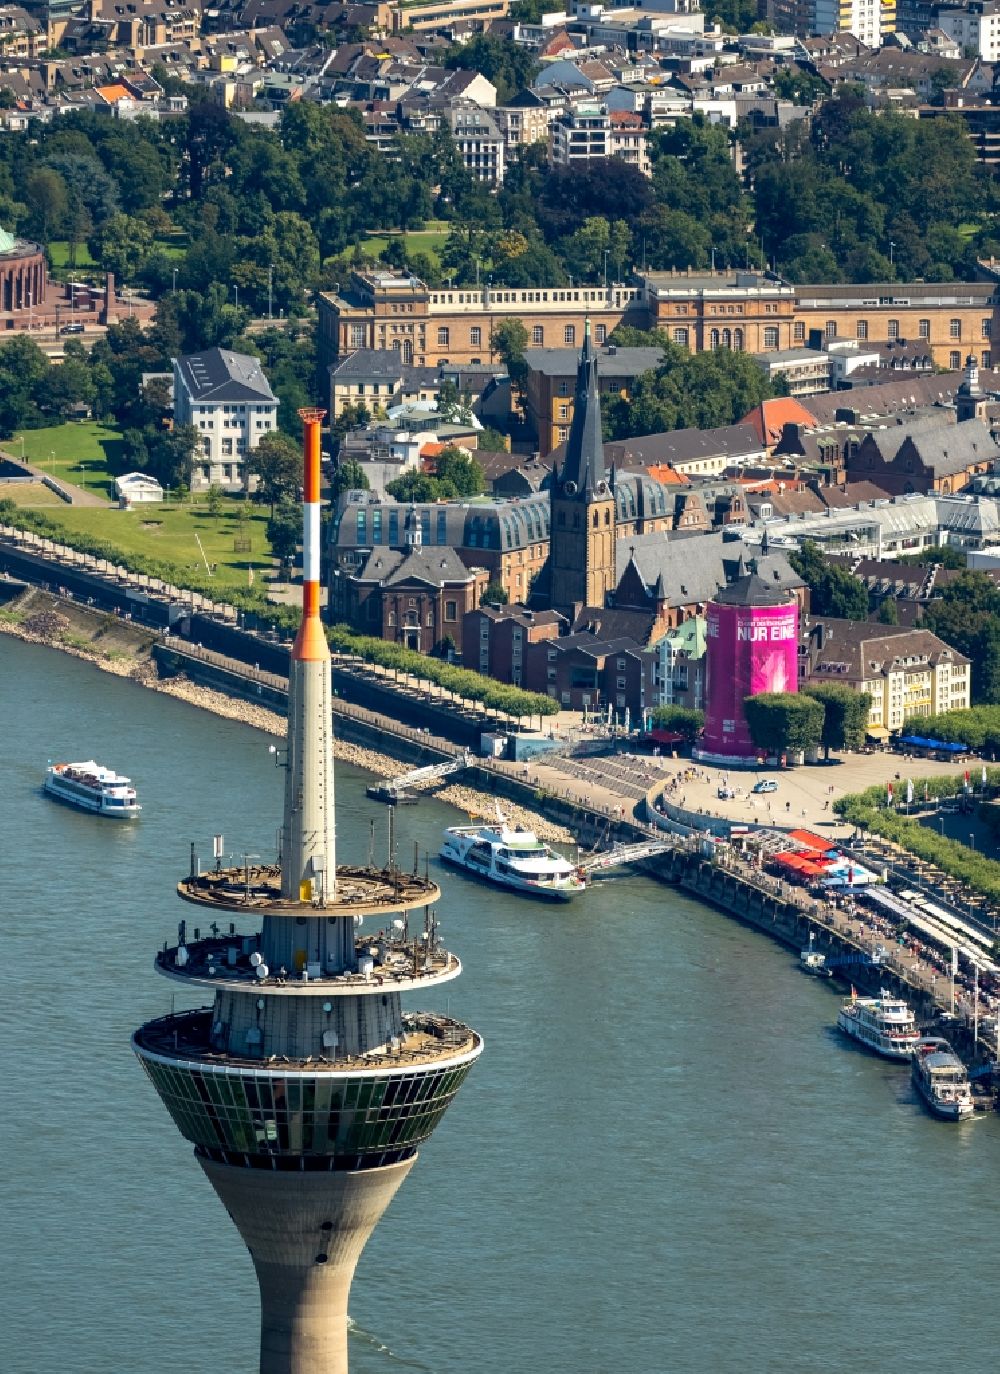 Luftbild Düsseldorf - Fernmeldeturm und Fernsehturm in Düsseldorf im Bundesland Nordrhein-Westfalen